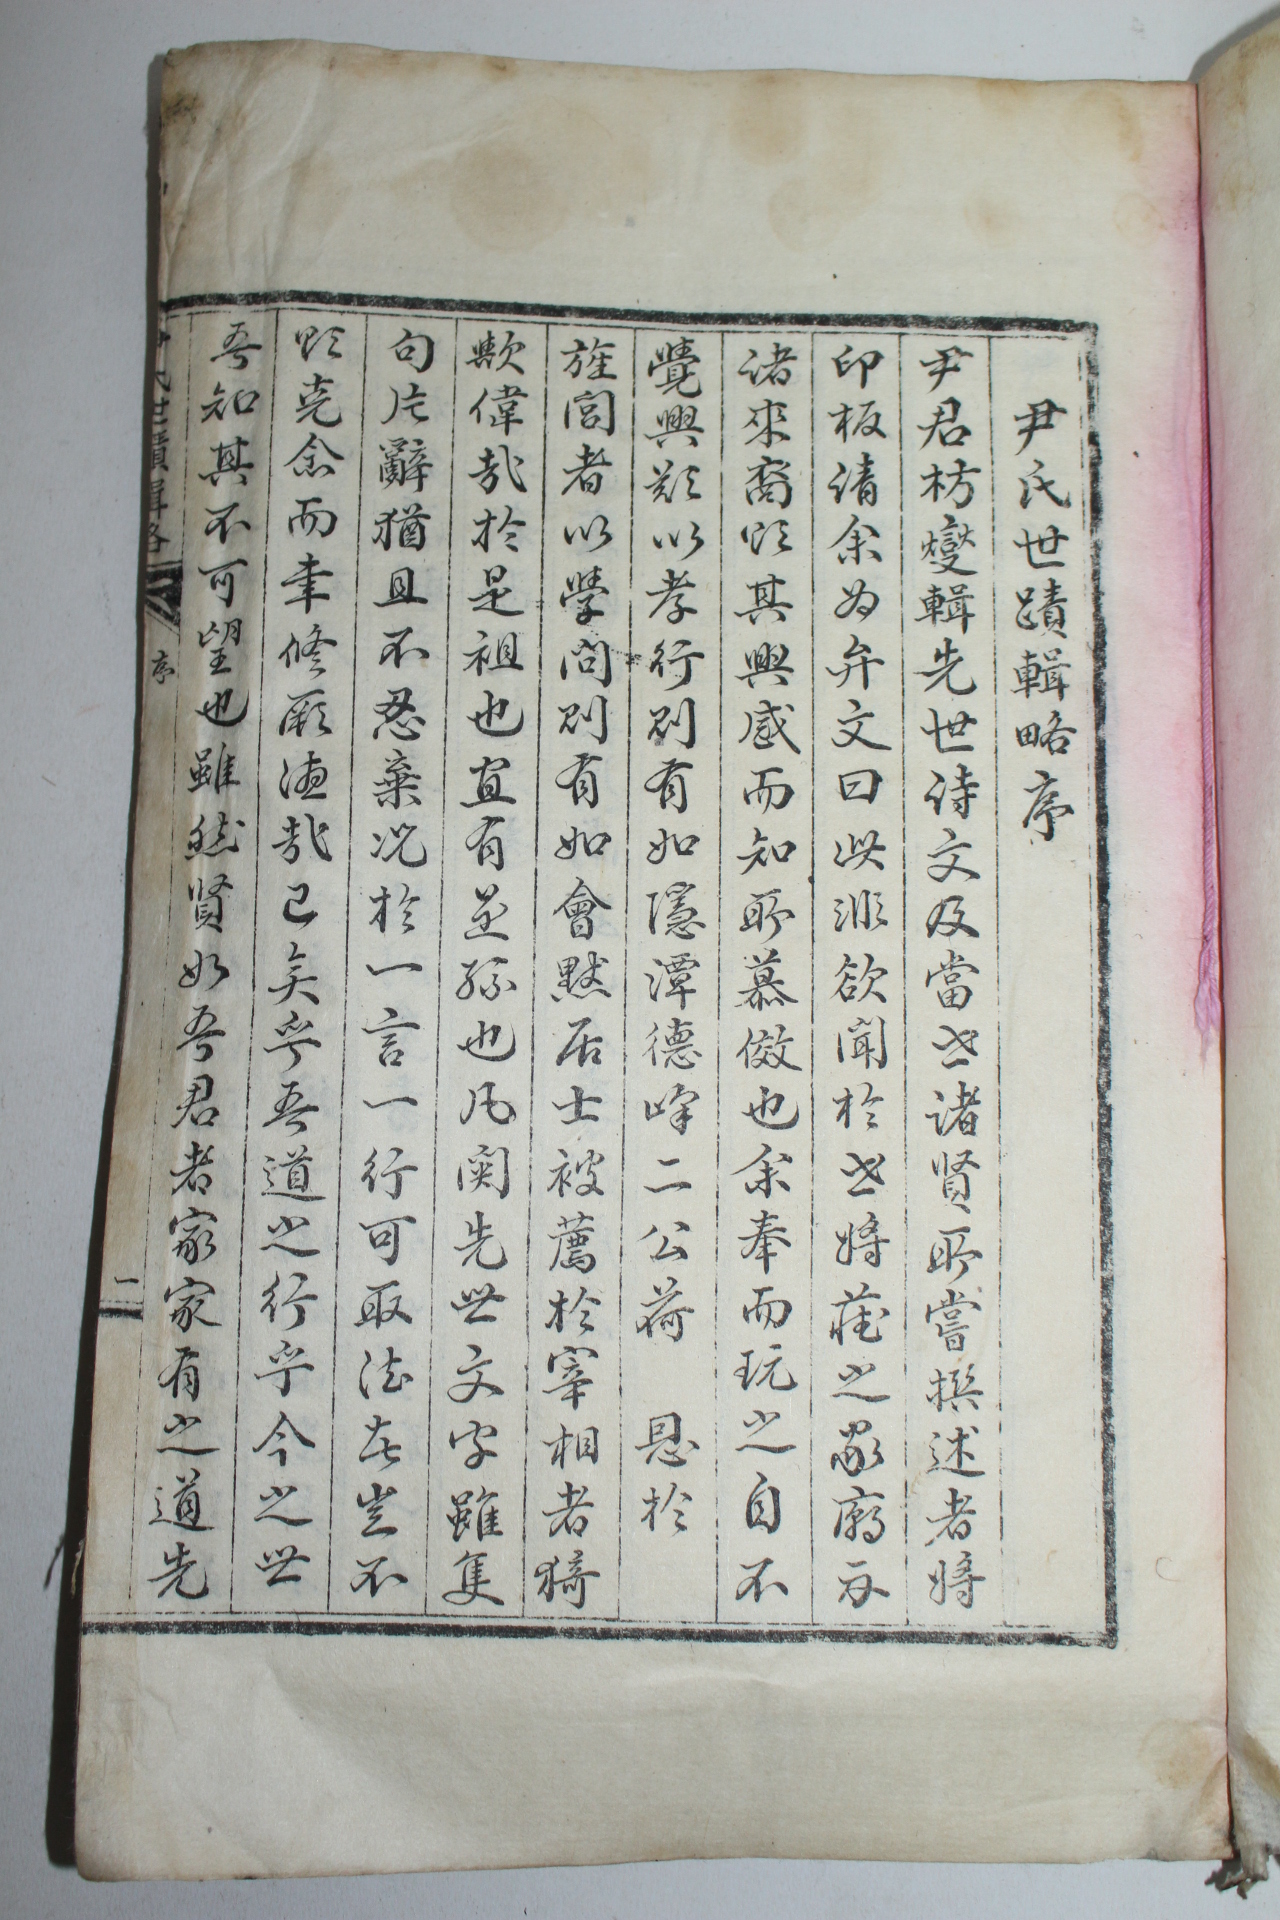 1935년 윤씨세적집략(尹氏世蹟輯略) 1책완질